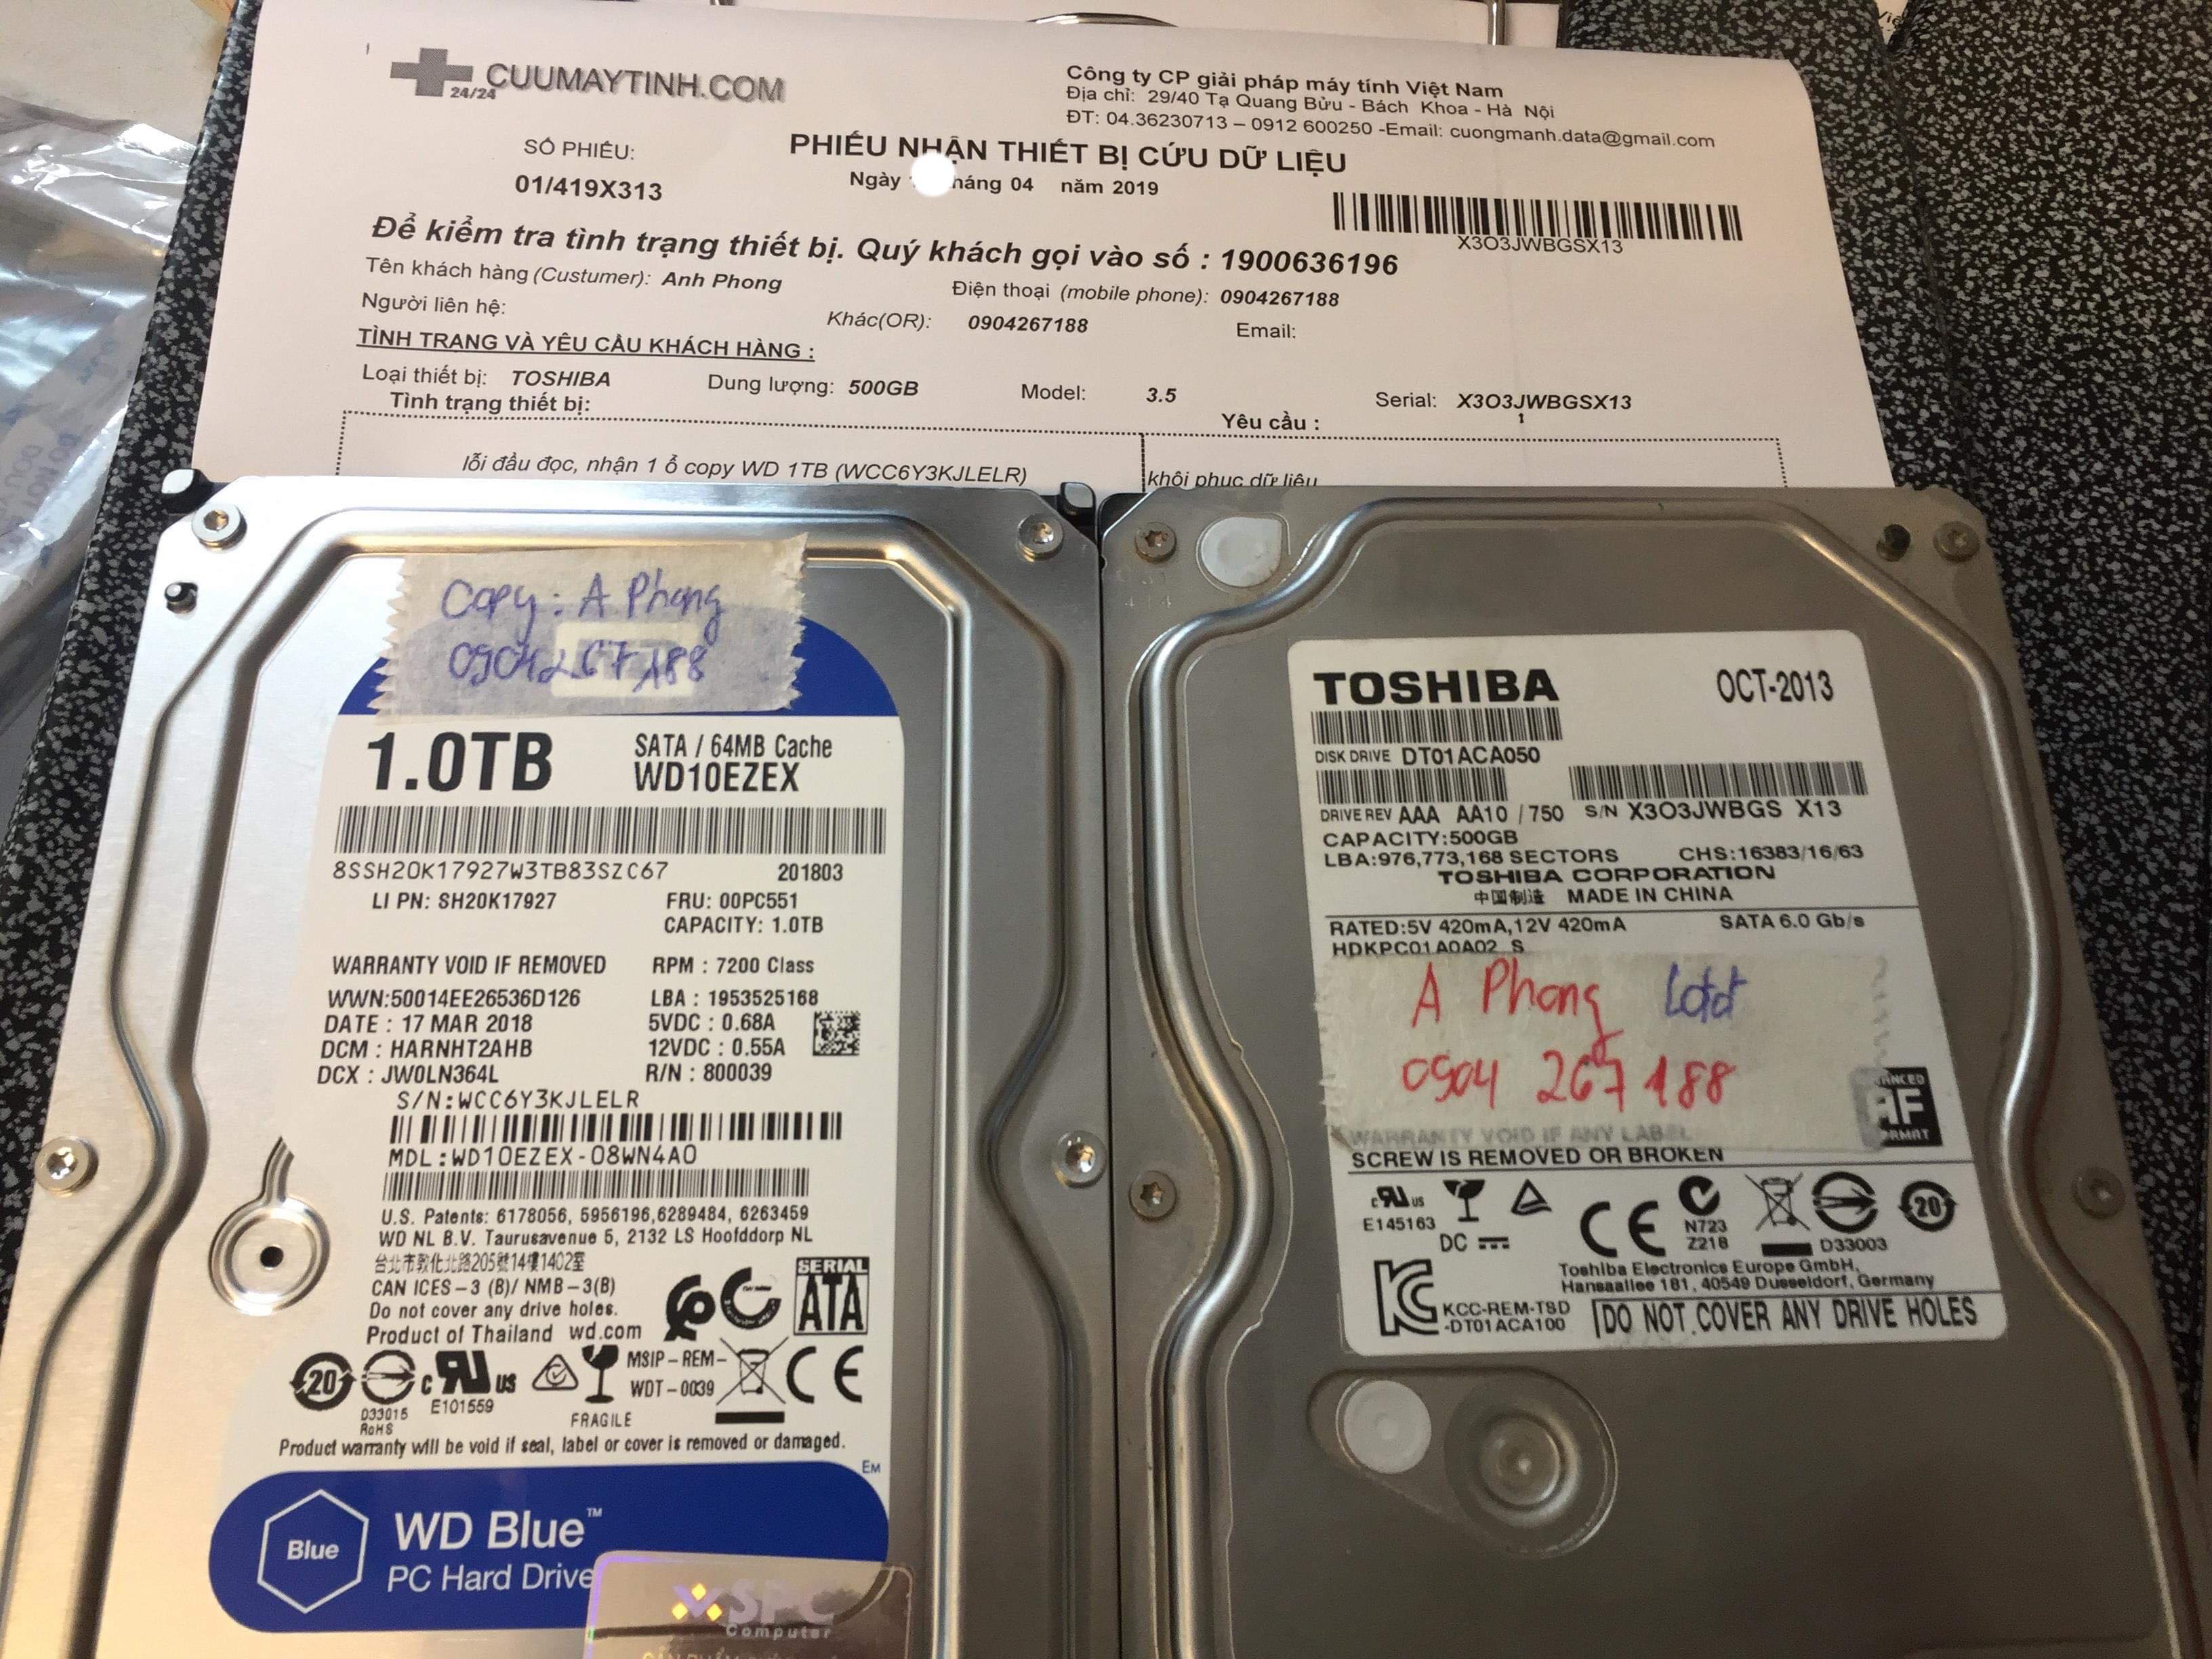 Lấy dữ liệu ổ cứng Toshiba 500GB lỗi đầu đọc  13/04/2019 - cuumaytinh